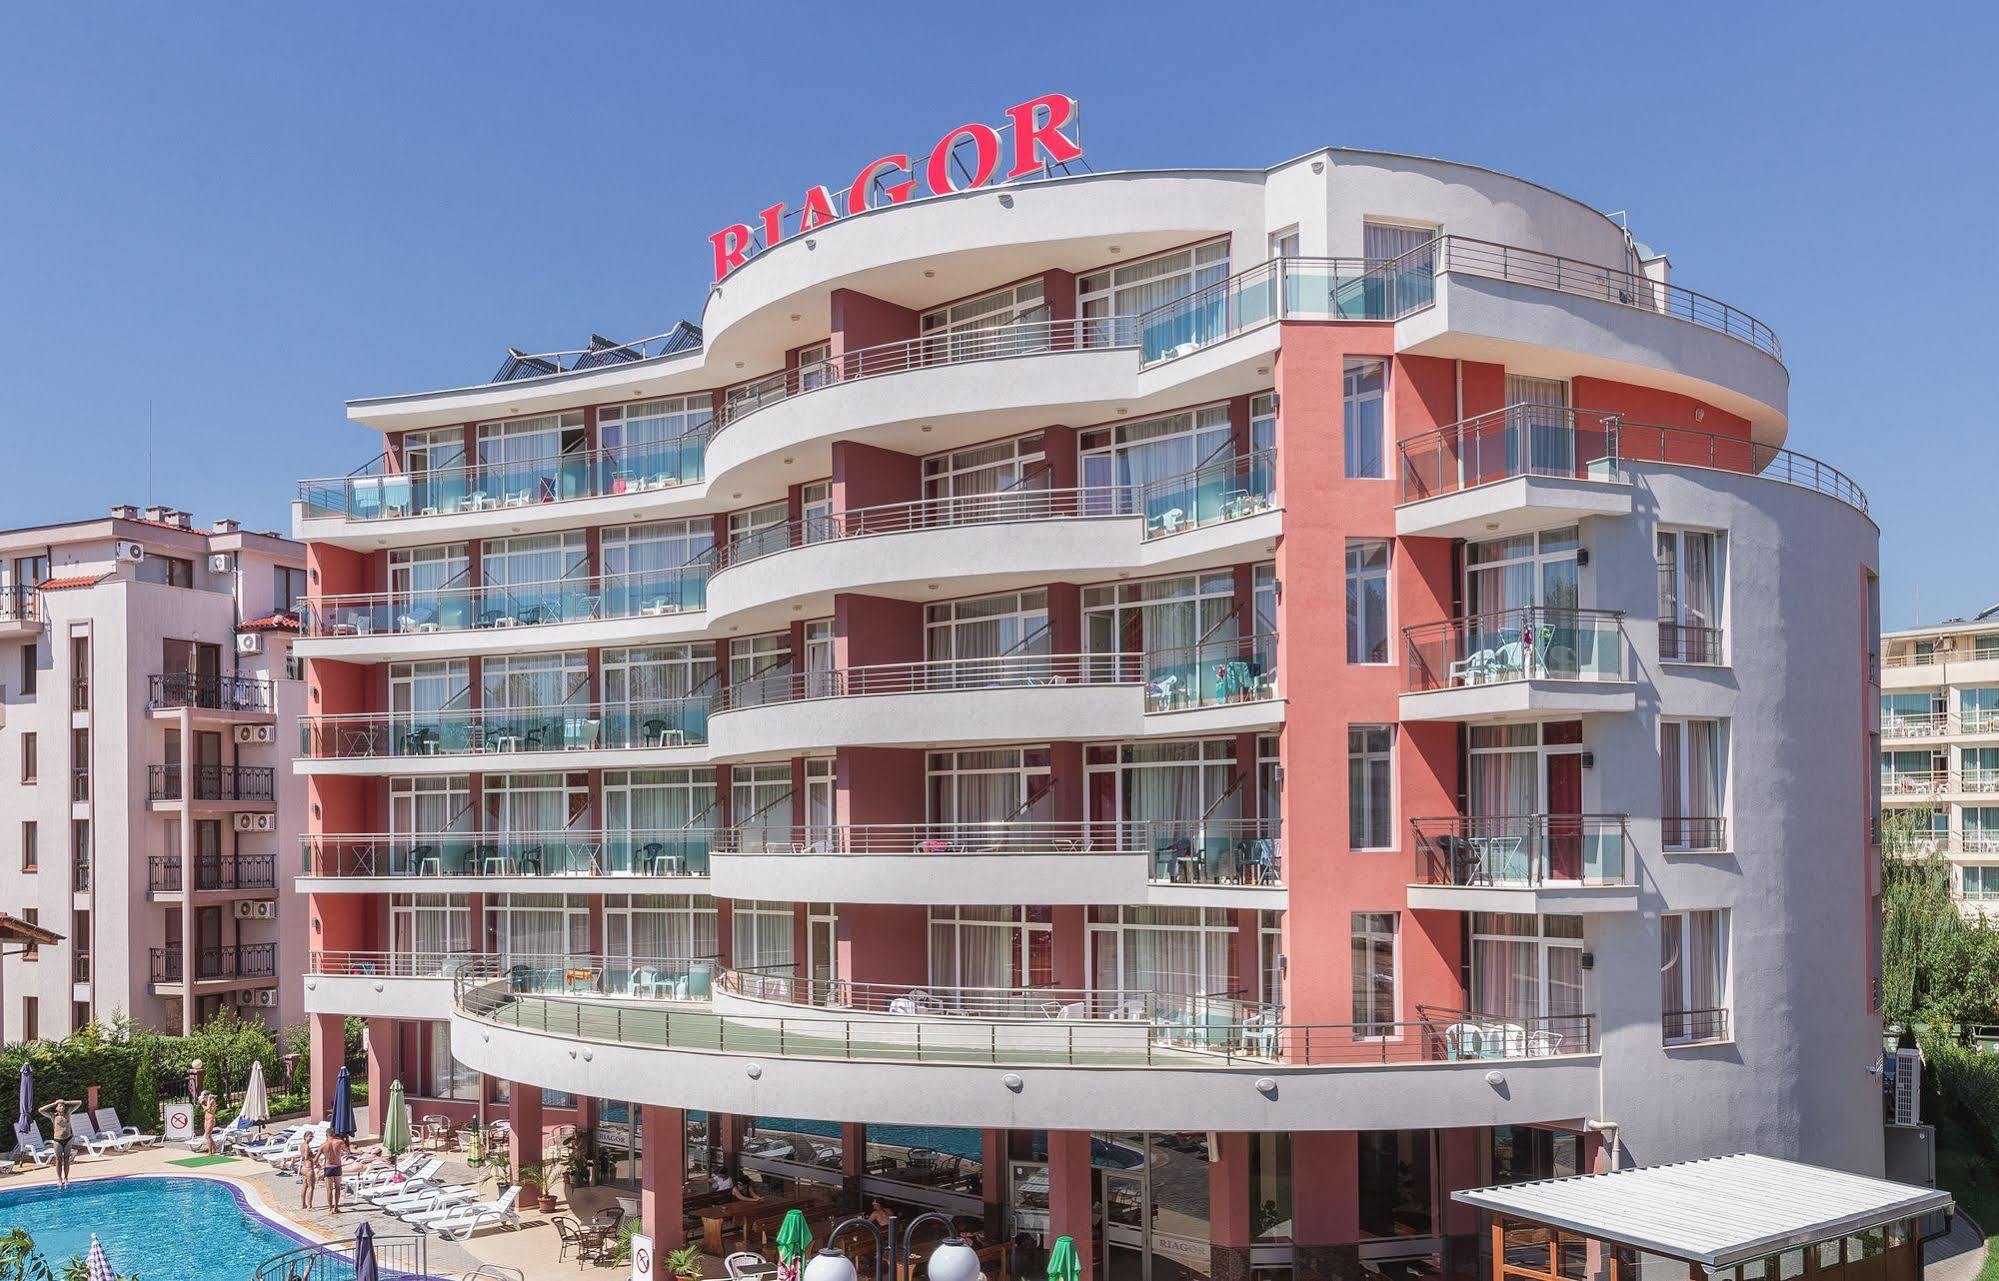 Hotel Riagor Sunny Beach Exterior photo